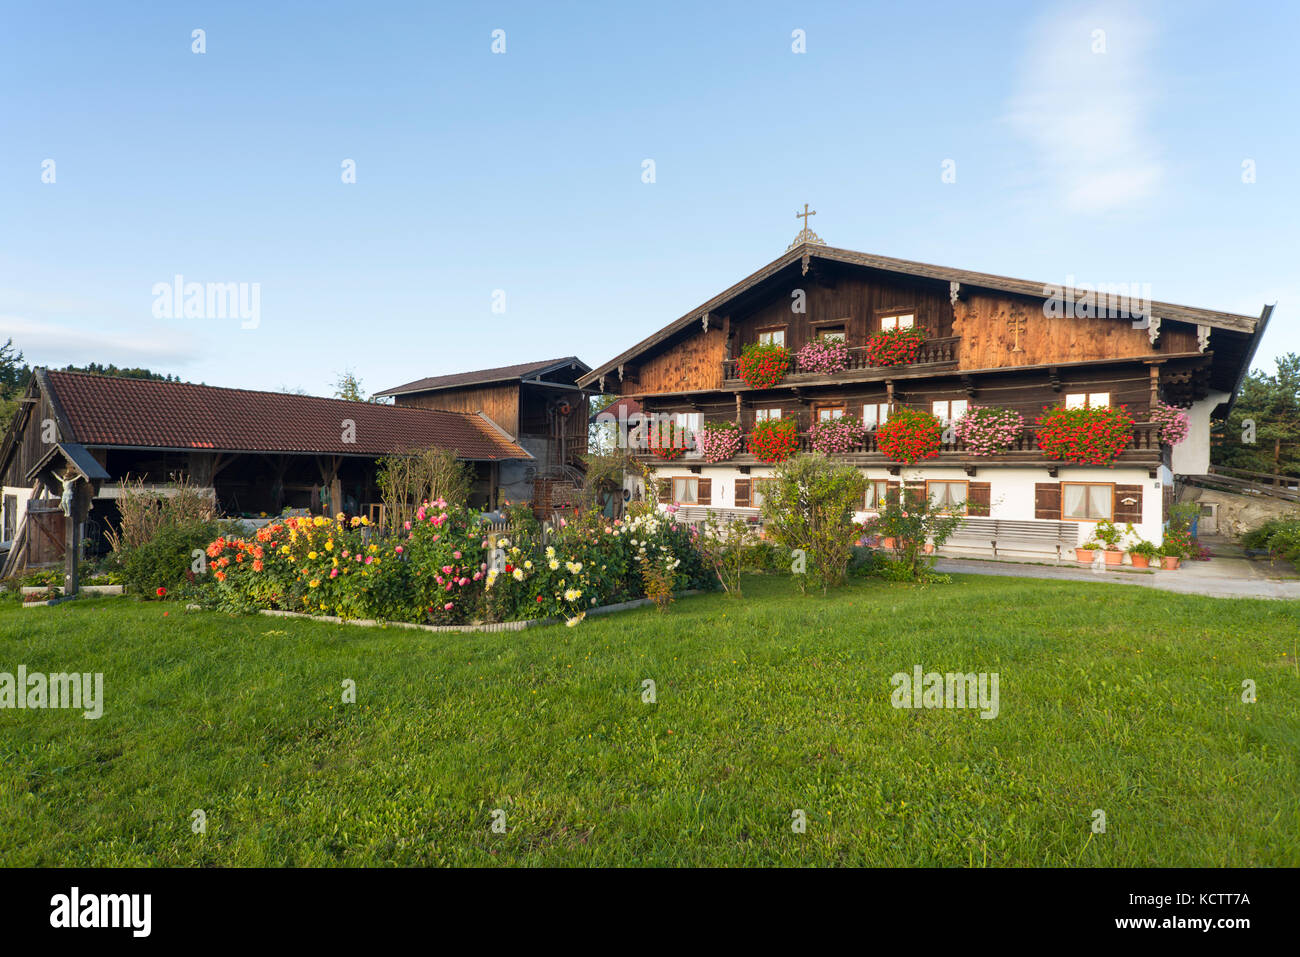 Bauernhof Häuser mit Holzfassade im traditionellen bayerischen Stil in Oberbayern mit blühenden Blumen in der Morgensonne, Irschenberg, Bayern, Deutschland Stockfoto